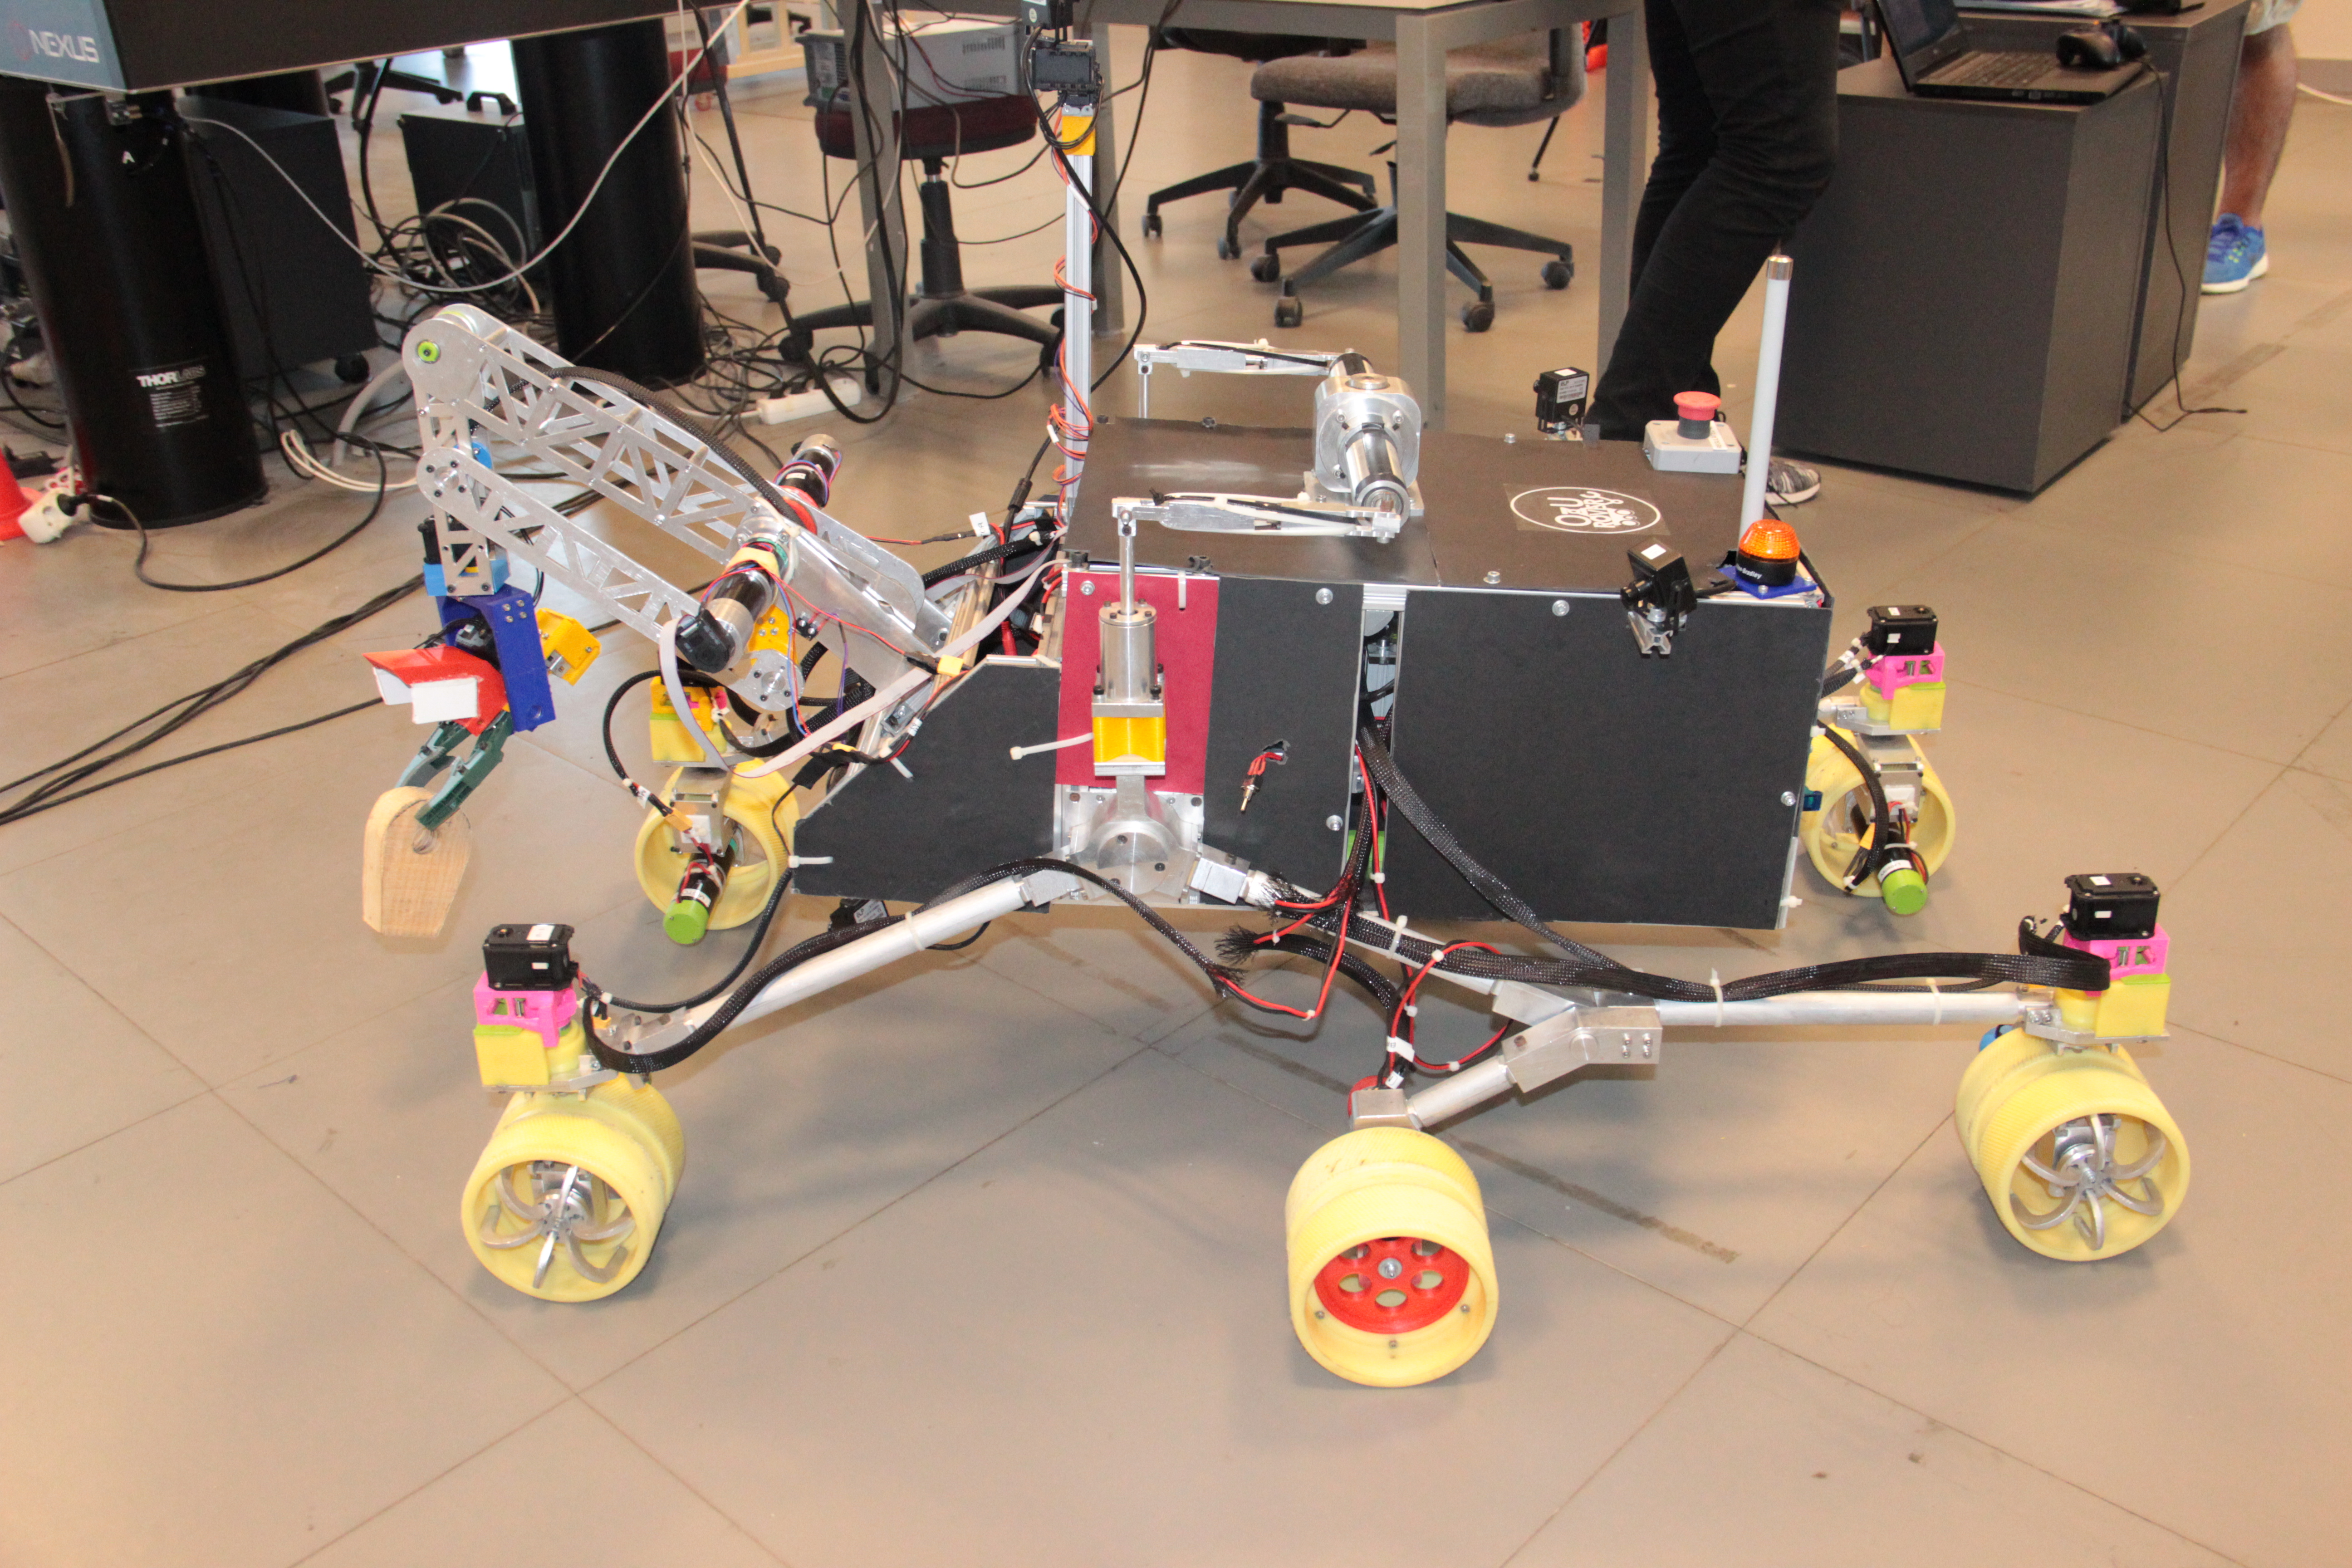 Özyeğin Üniversitesi öğrencilerinin tasarladığı mars robotu ikinci kez Türkiye’den katılan tek takım olarak Polonya’da yarışacak-1141